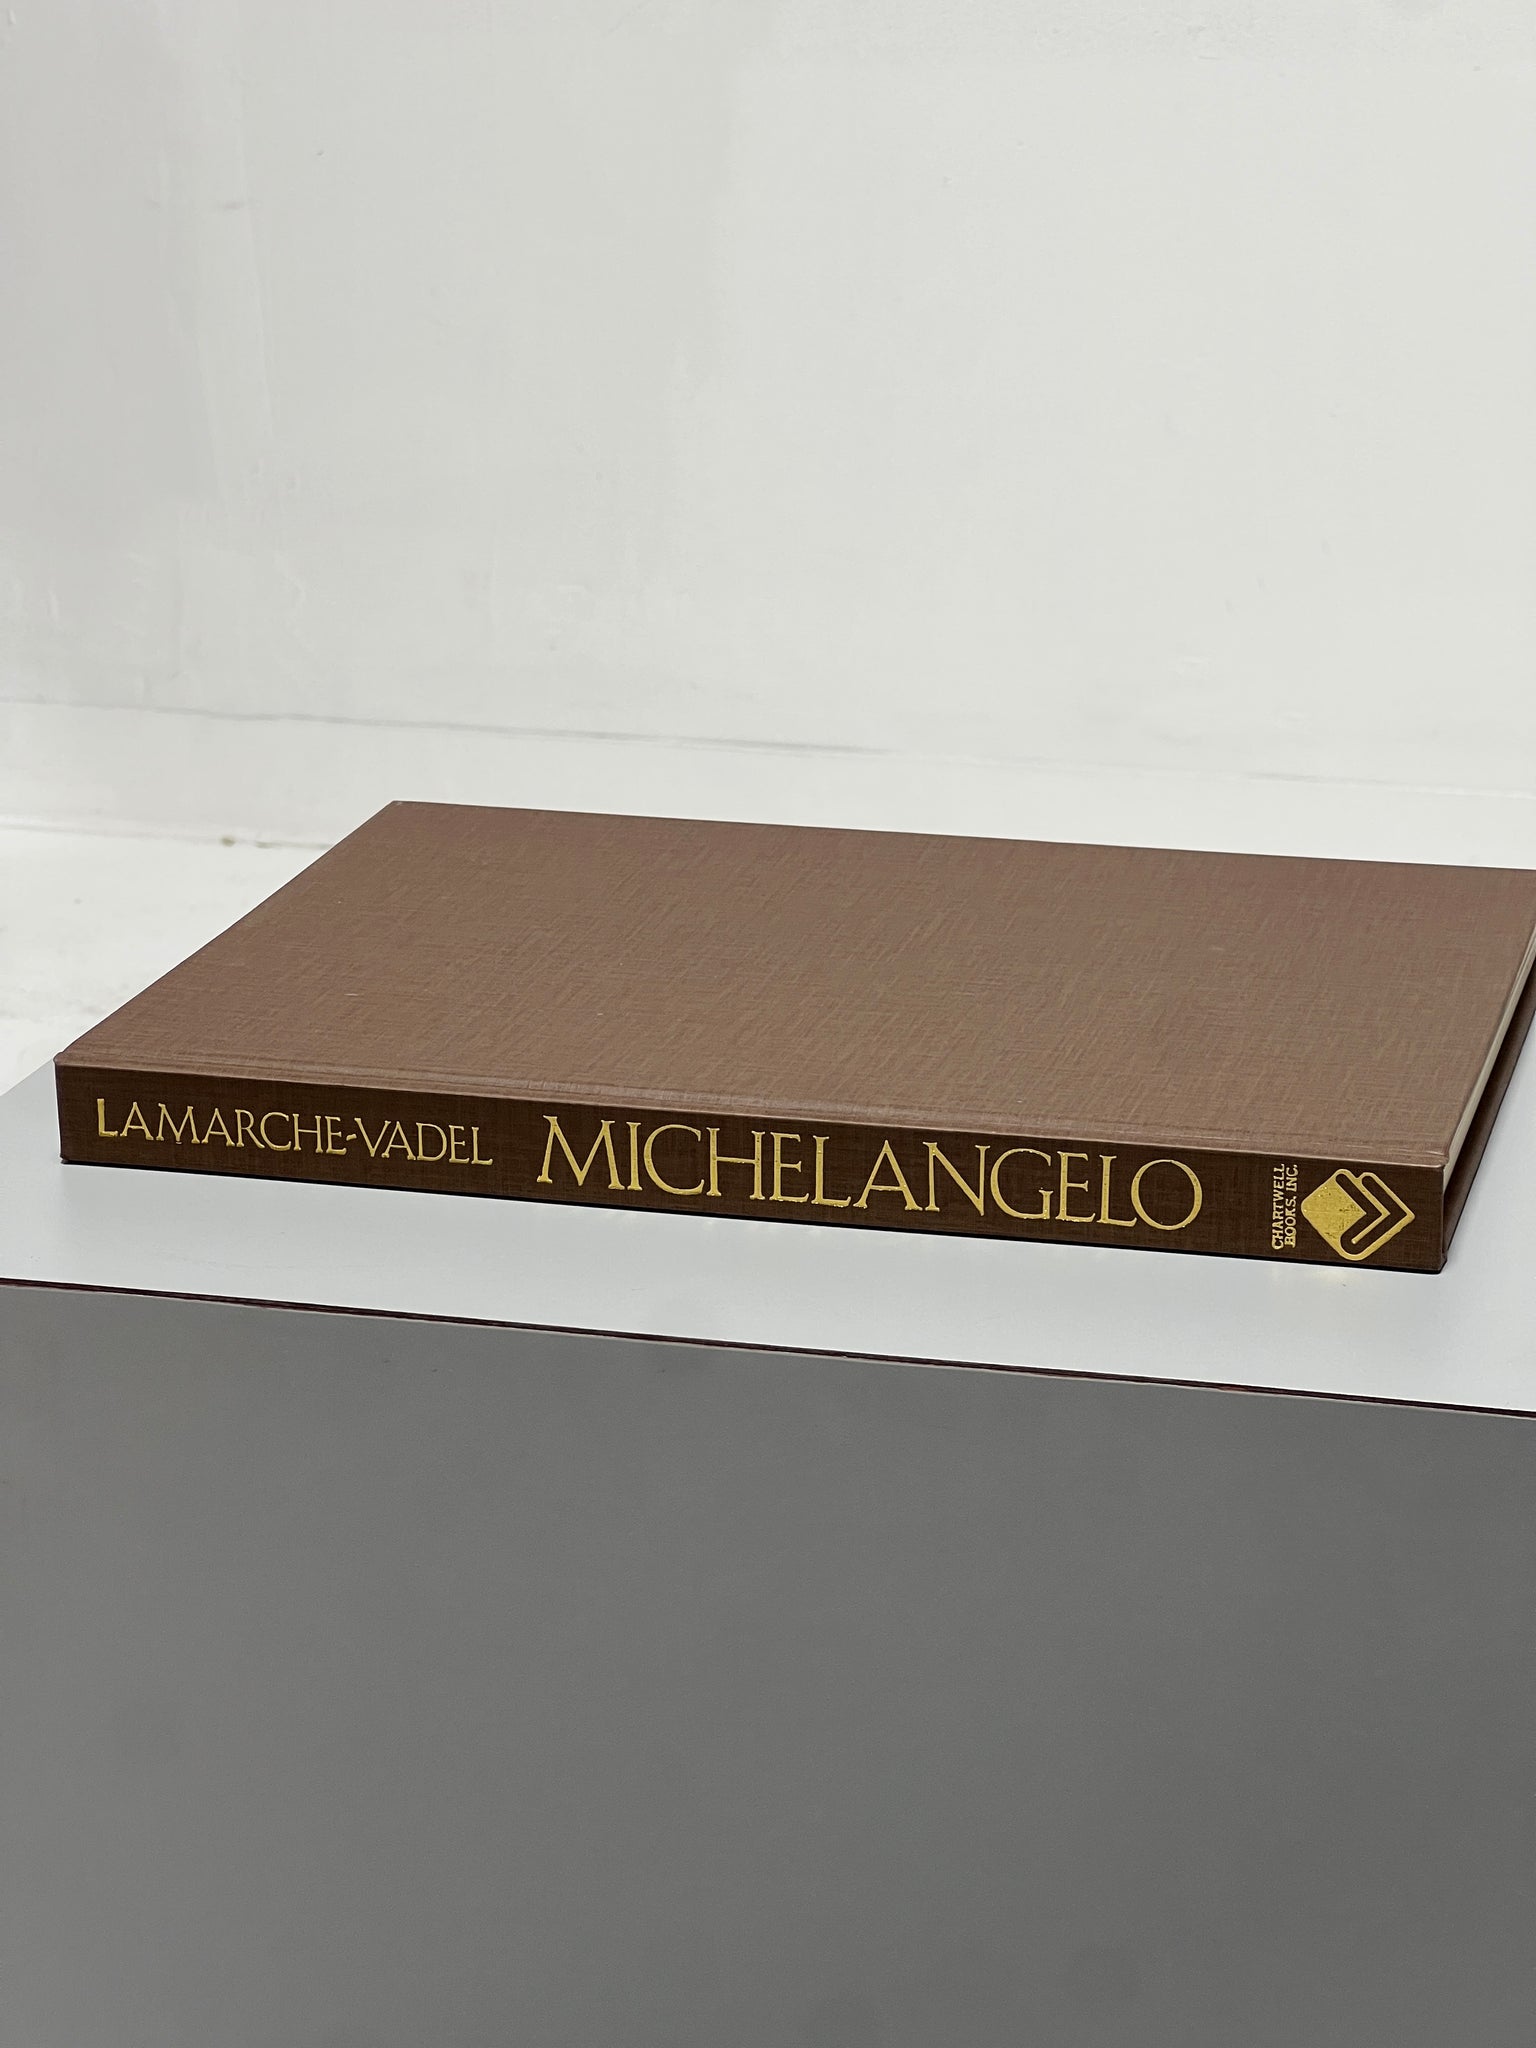 Michelangelo, 1986